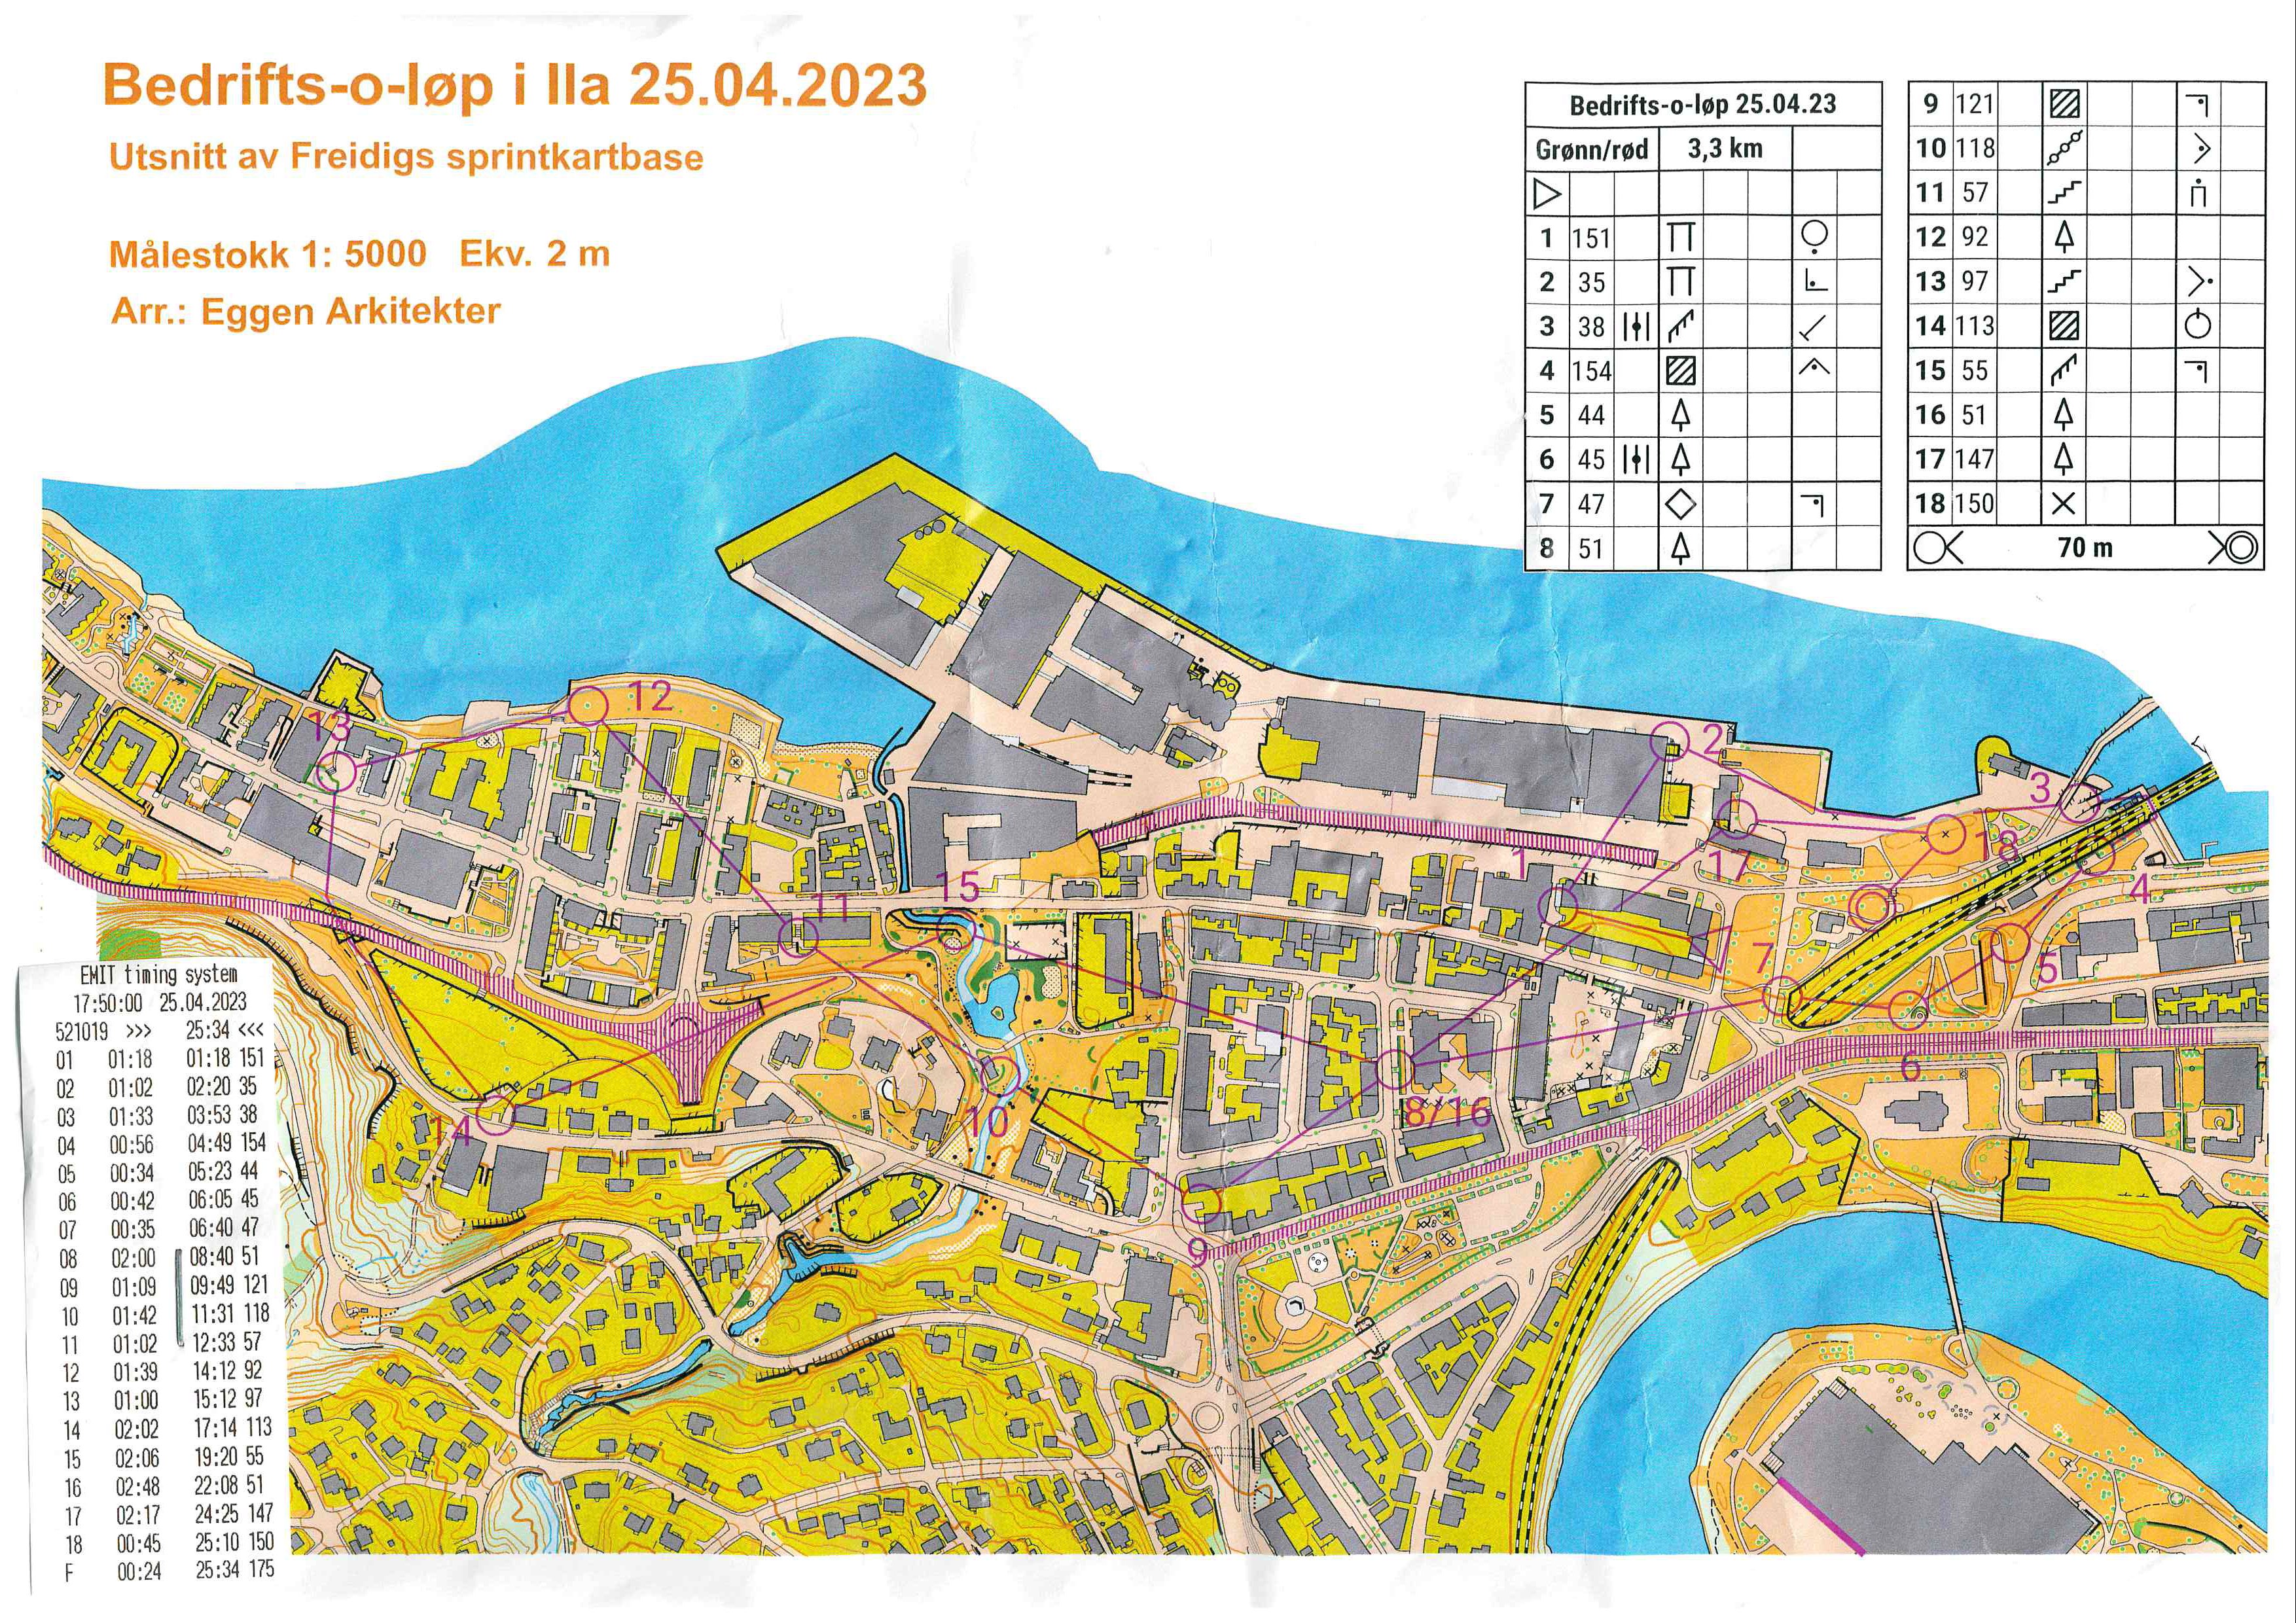 Bedrifts-o-løp, sprint, Skansen (25/04/2023)